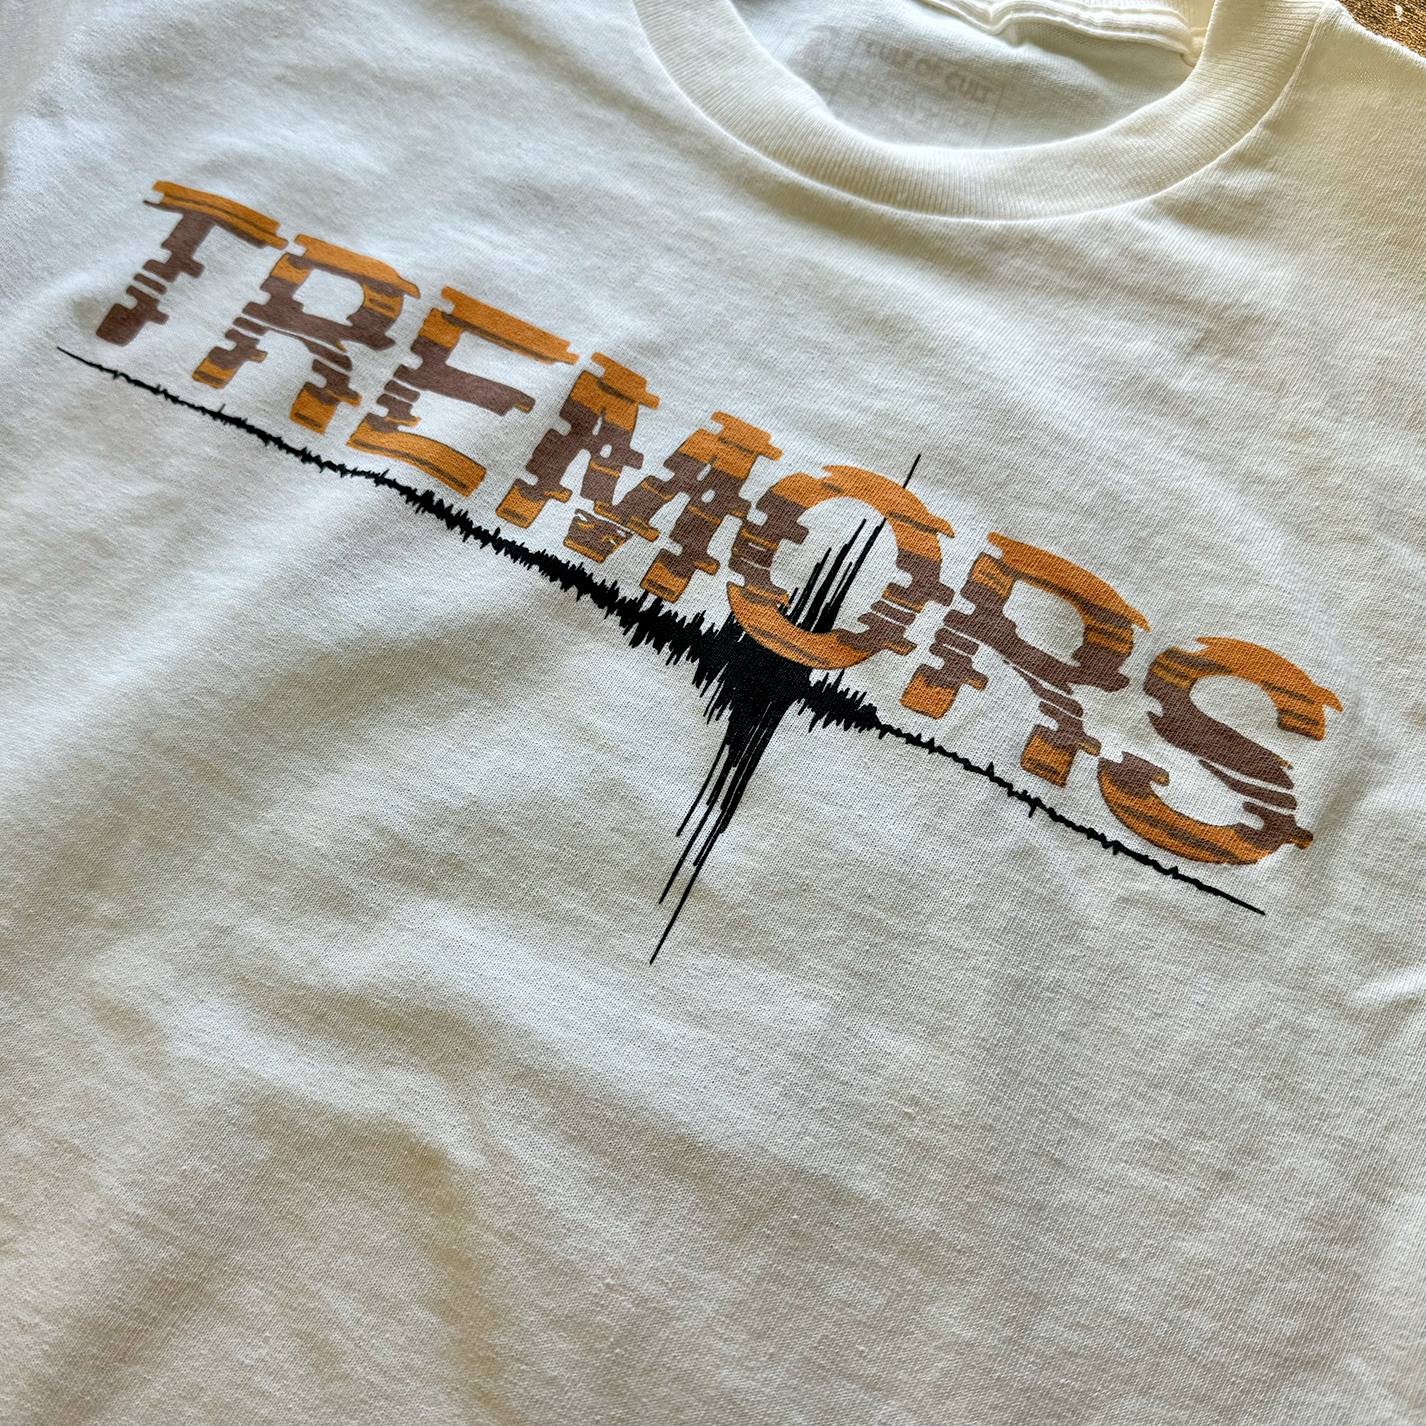 Camiseta Temblores 1990